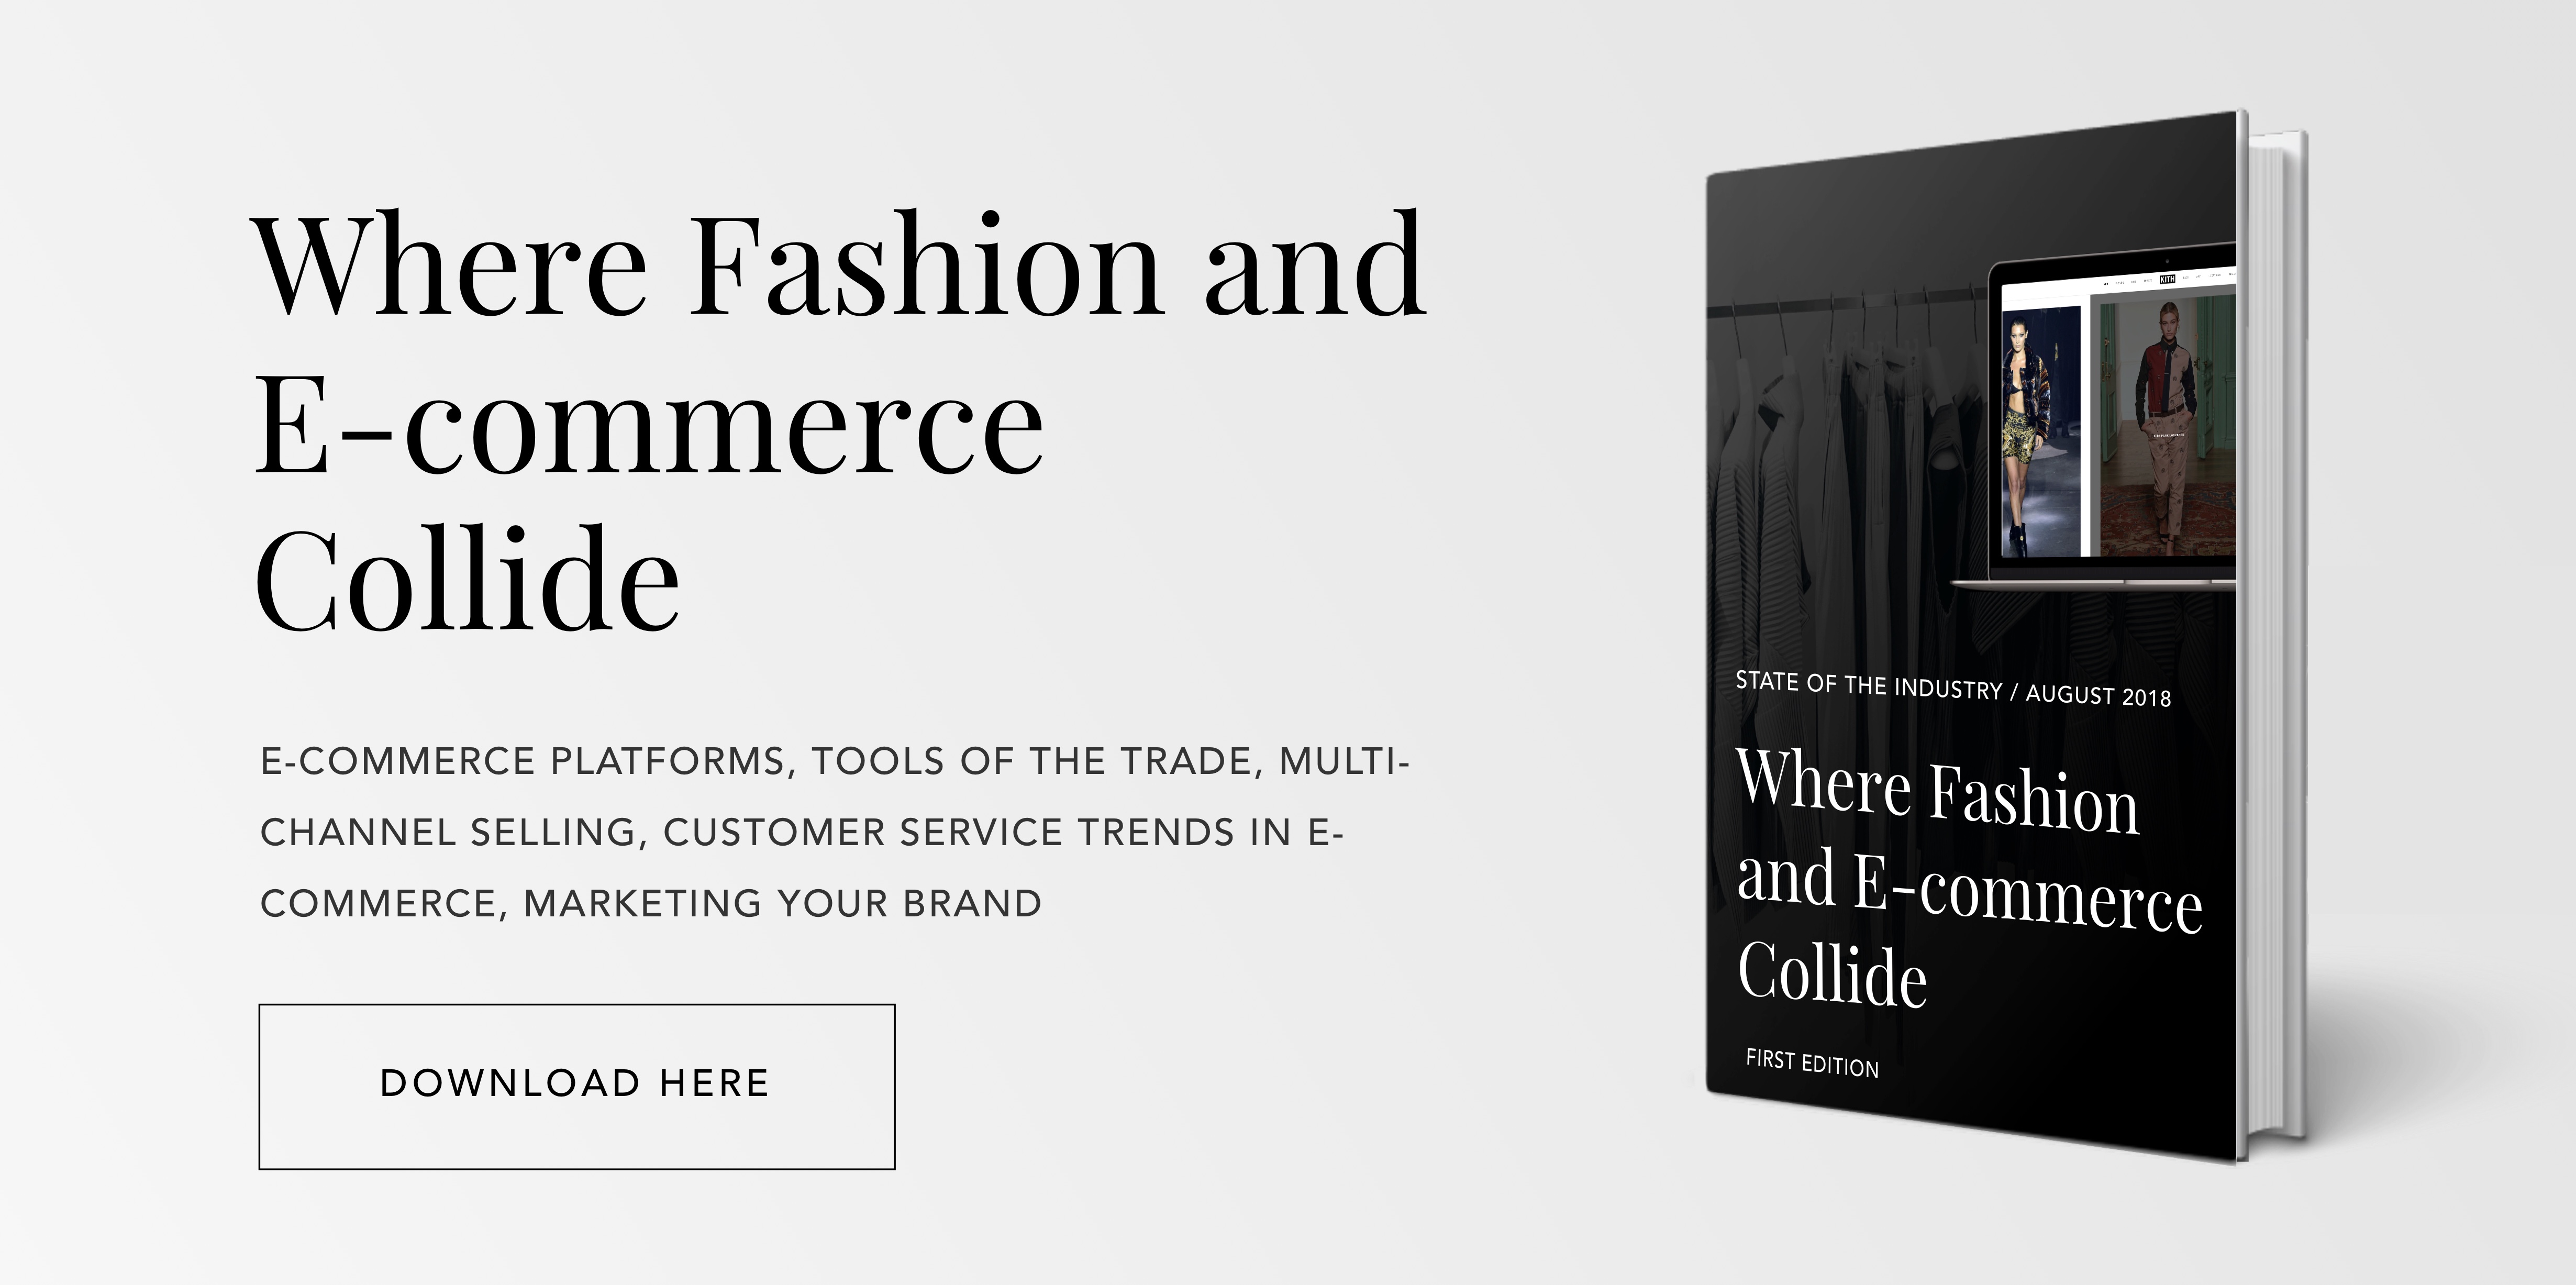 Avex Designs - Fashion E-commerce E-book